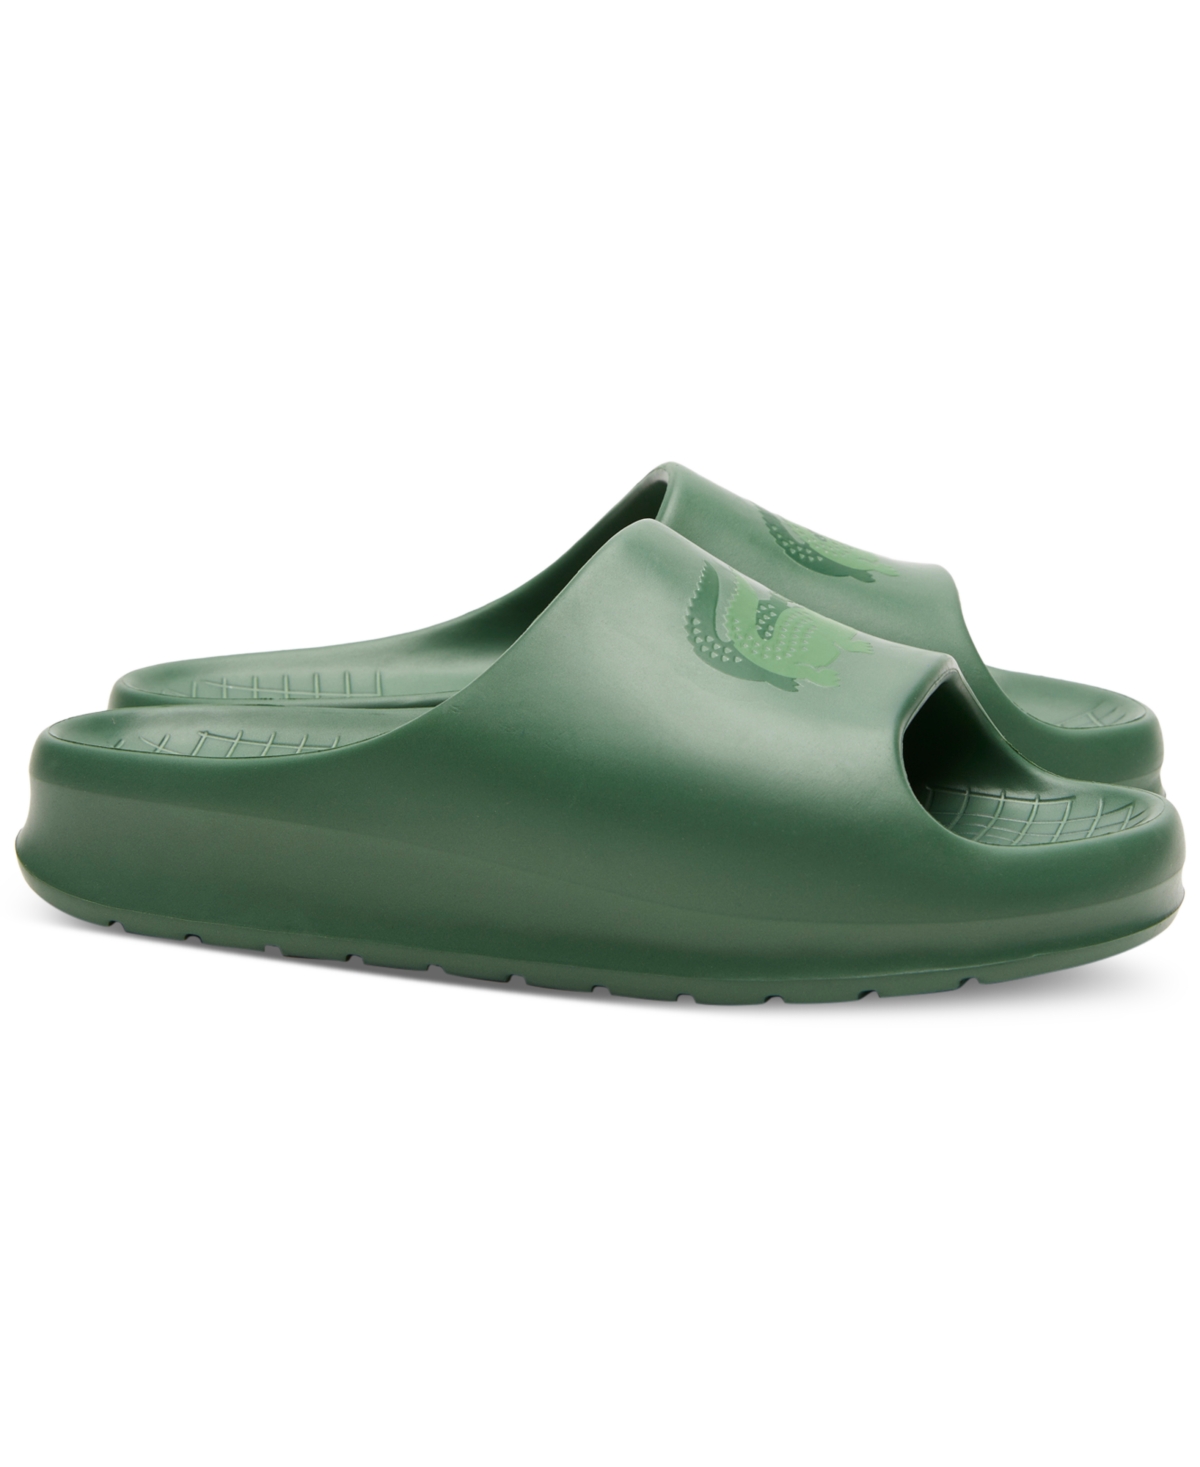 Men's Croco 2.0 Evo Slip-On Slide Sandals - Green/Green